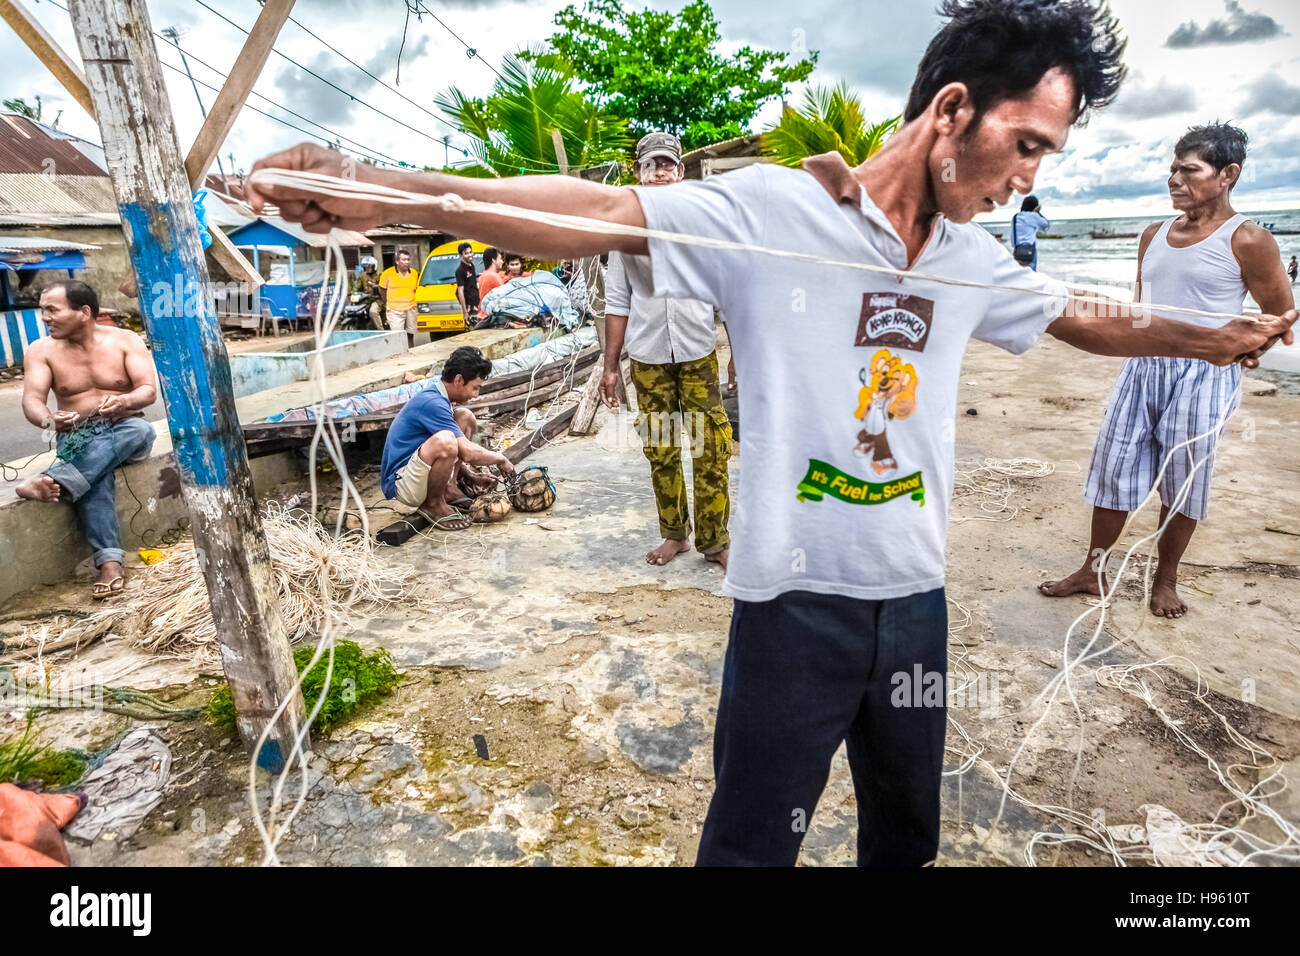 Pescatori che riparano le linee di pesca sulla spiaggia del villaggio di Malabro a Bengkulu, una città di Sumatra costa occidentale di fronte all'Oceano Indiano. Immagine di archivio. Foto Stock